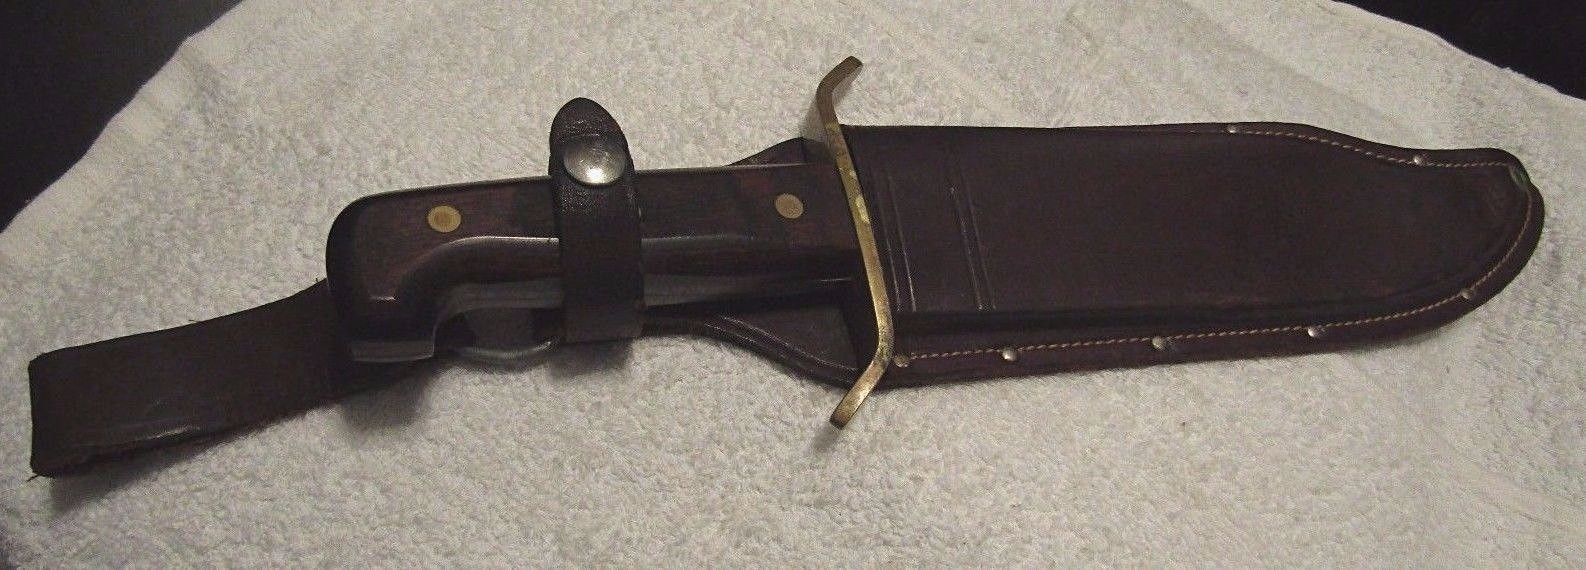 WESTERN W49 BOWIE KNIFE w/ Leather Sheath USA